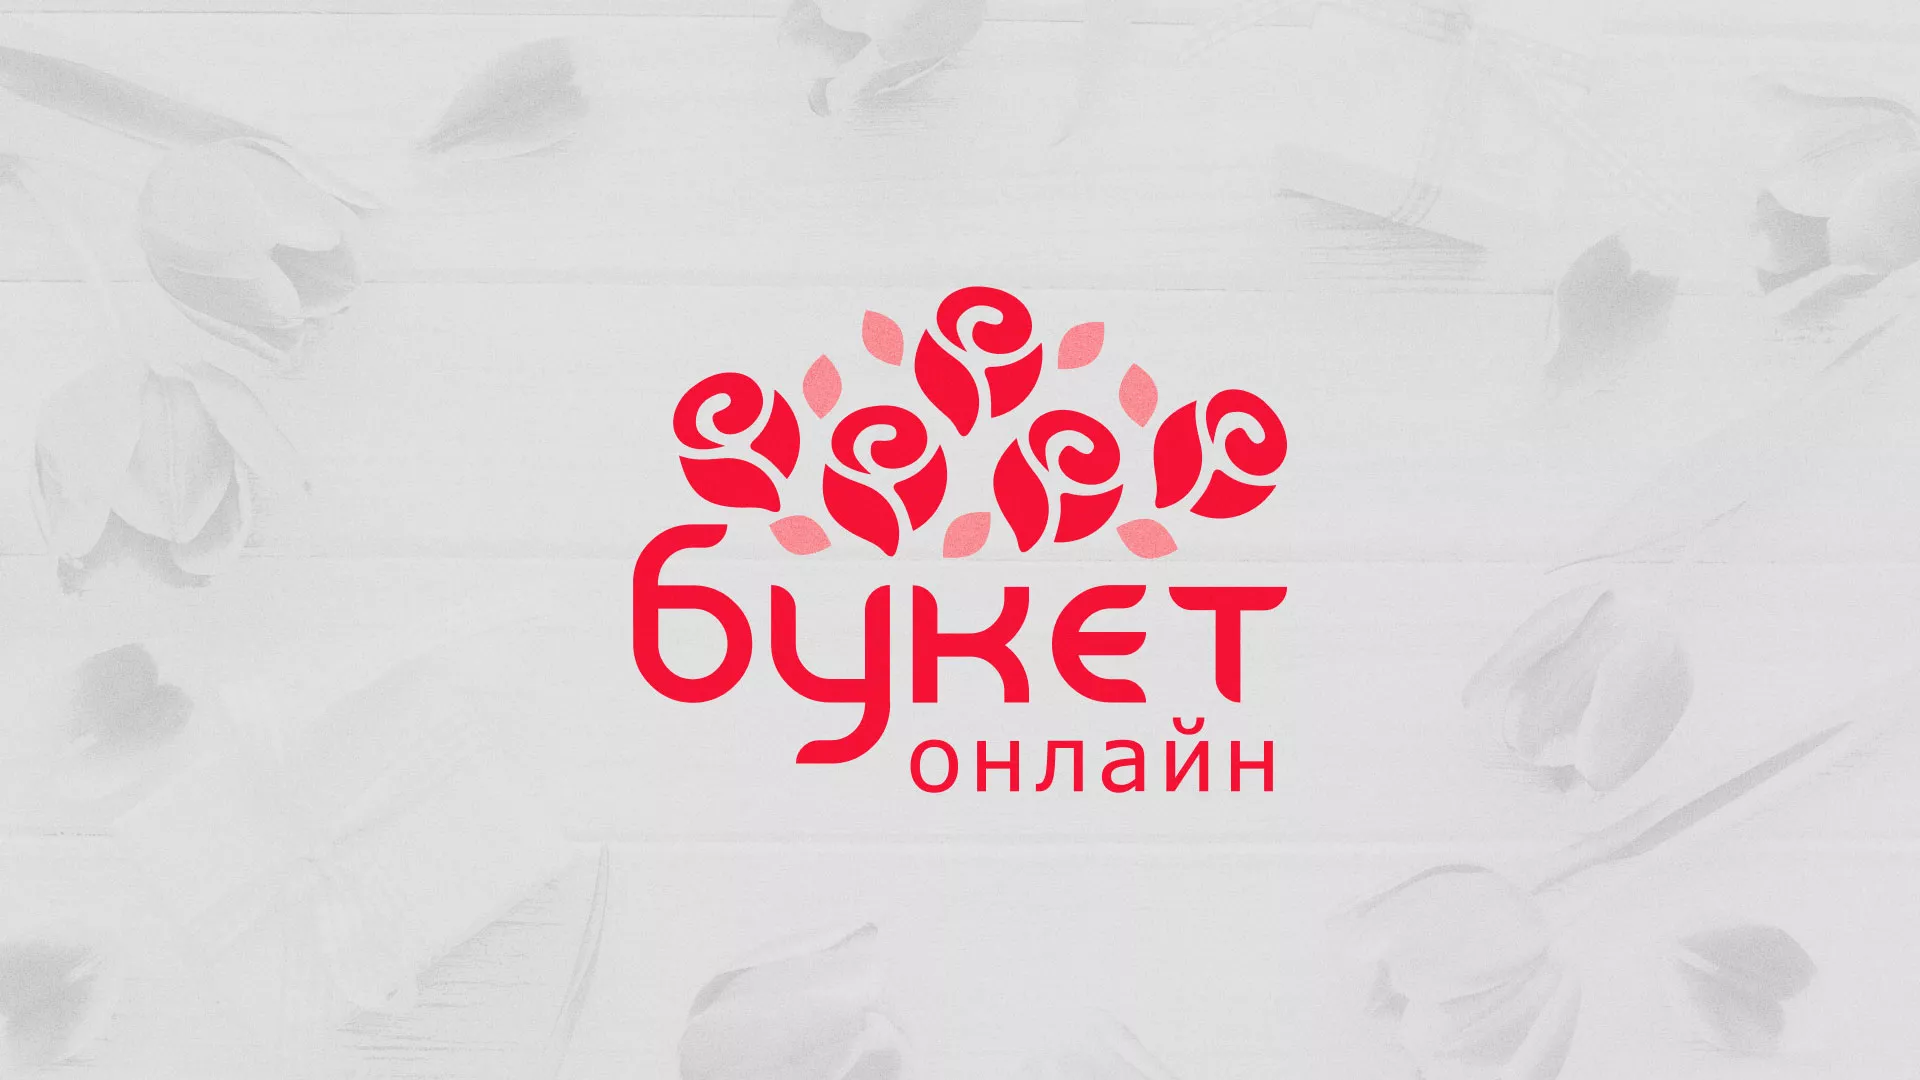 Создание интернет-магазина «Букет-онлайн» по цветам в Нижнем Новгороде